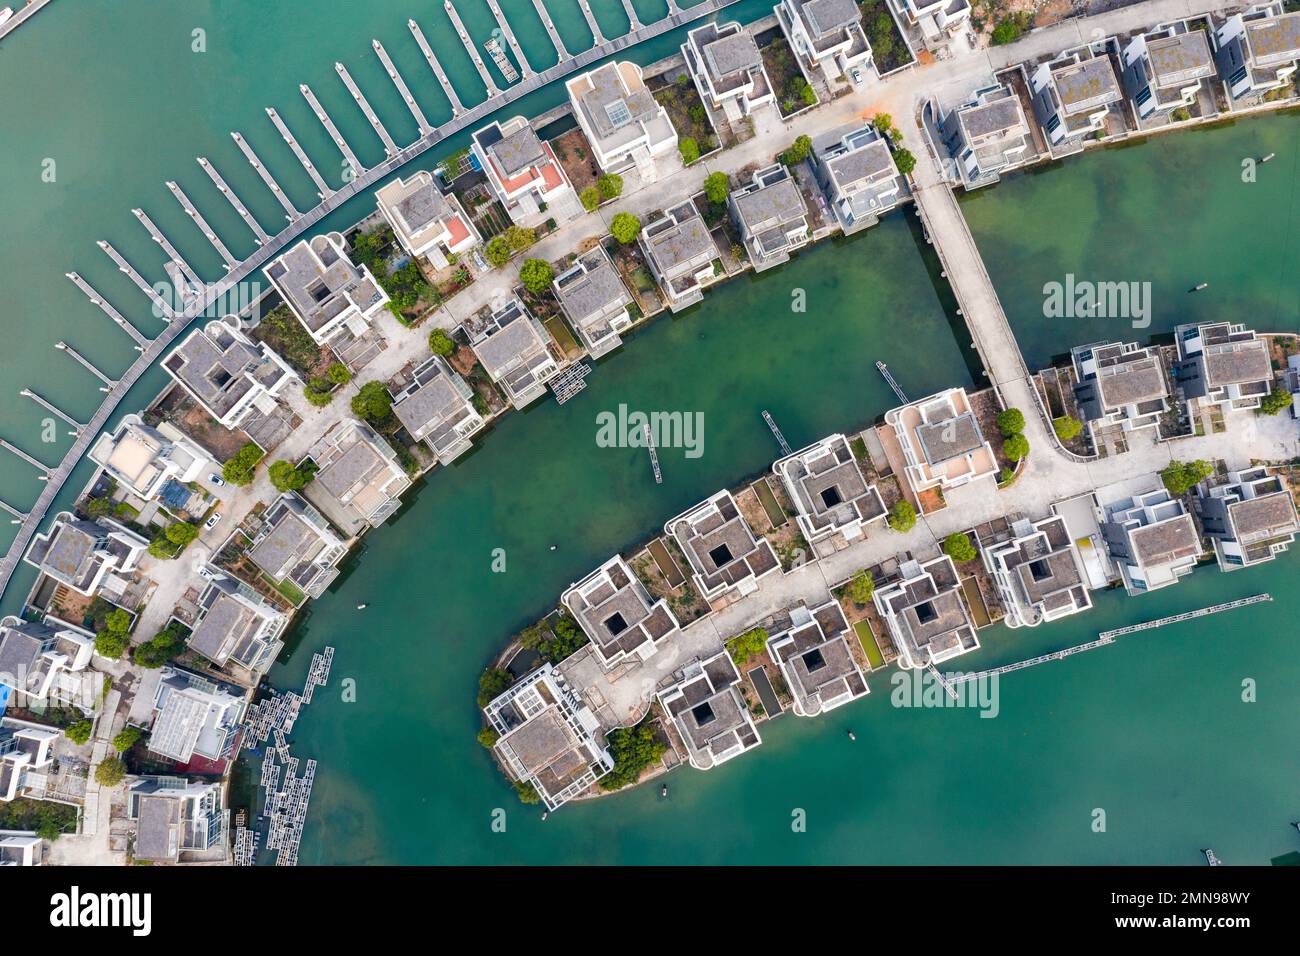 Vous aurez une vue panoramique sur le club de yacht international de xiangshan à xiamen Dock Banque D'Images